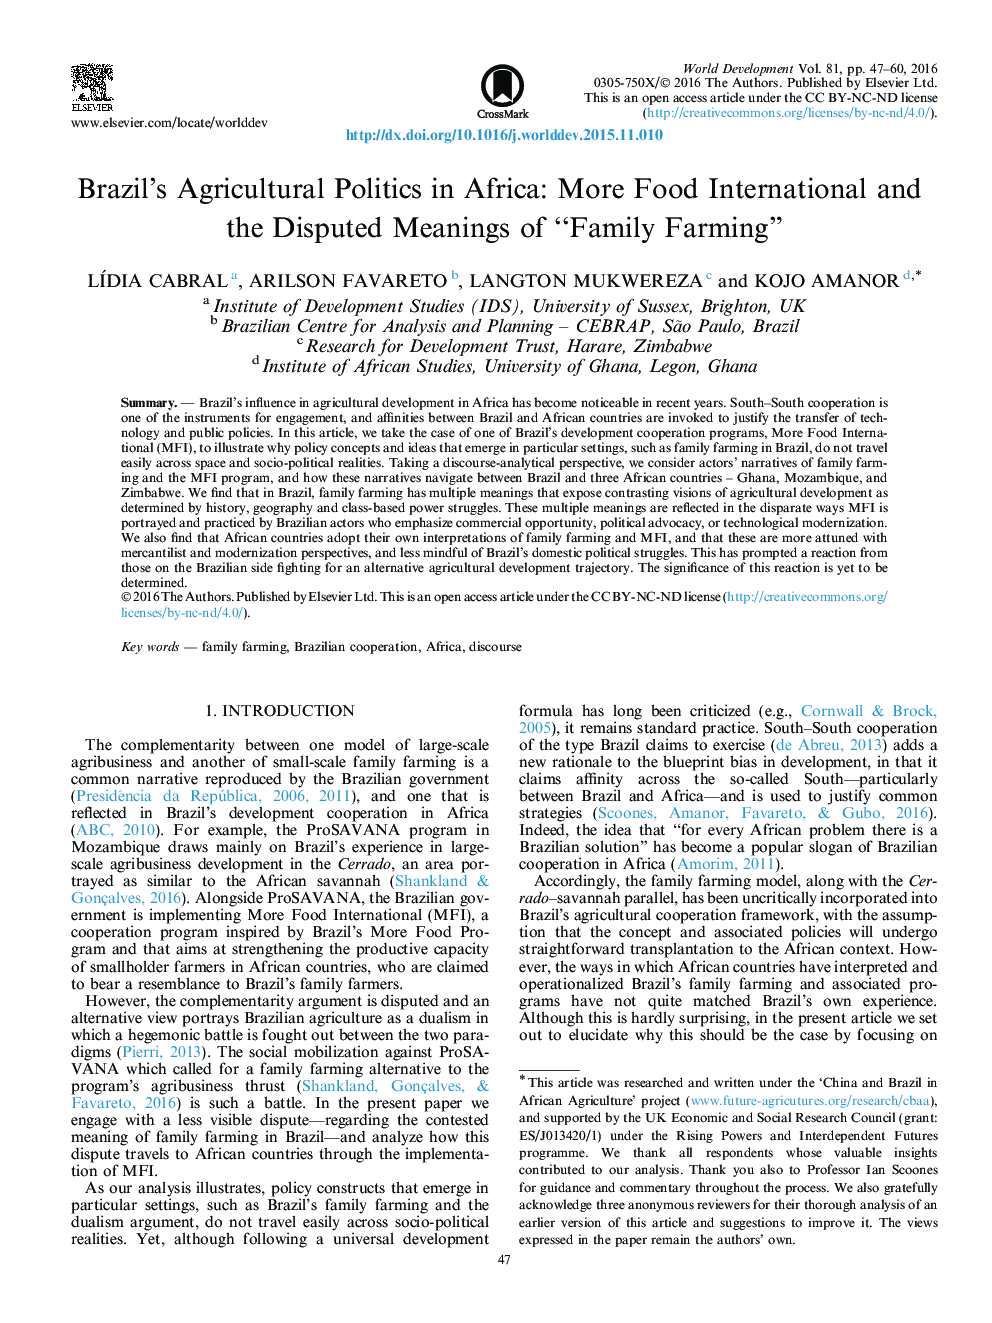 سیاست کشاورزی برزیل در آفریقا: معانی بیشتر بین المللی مواد غذایی و مورد اختلاف "کشاورزی خانواده"